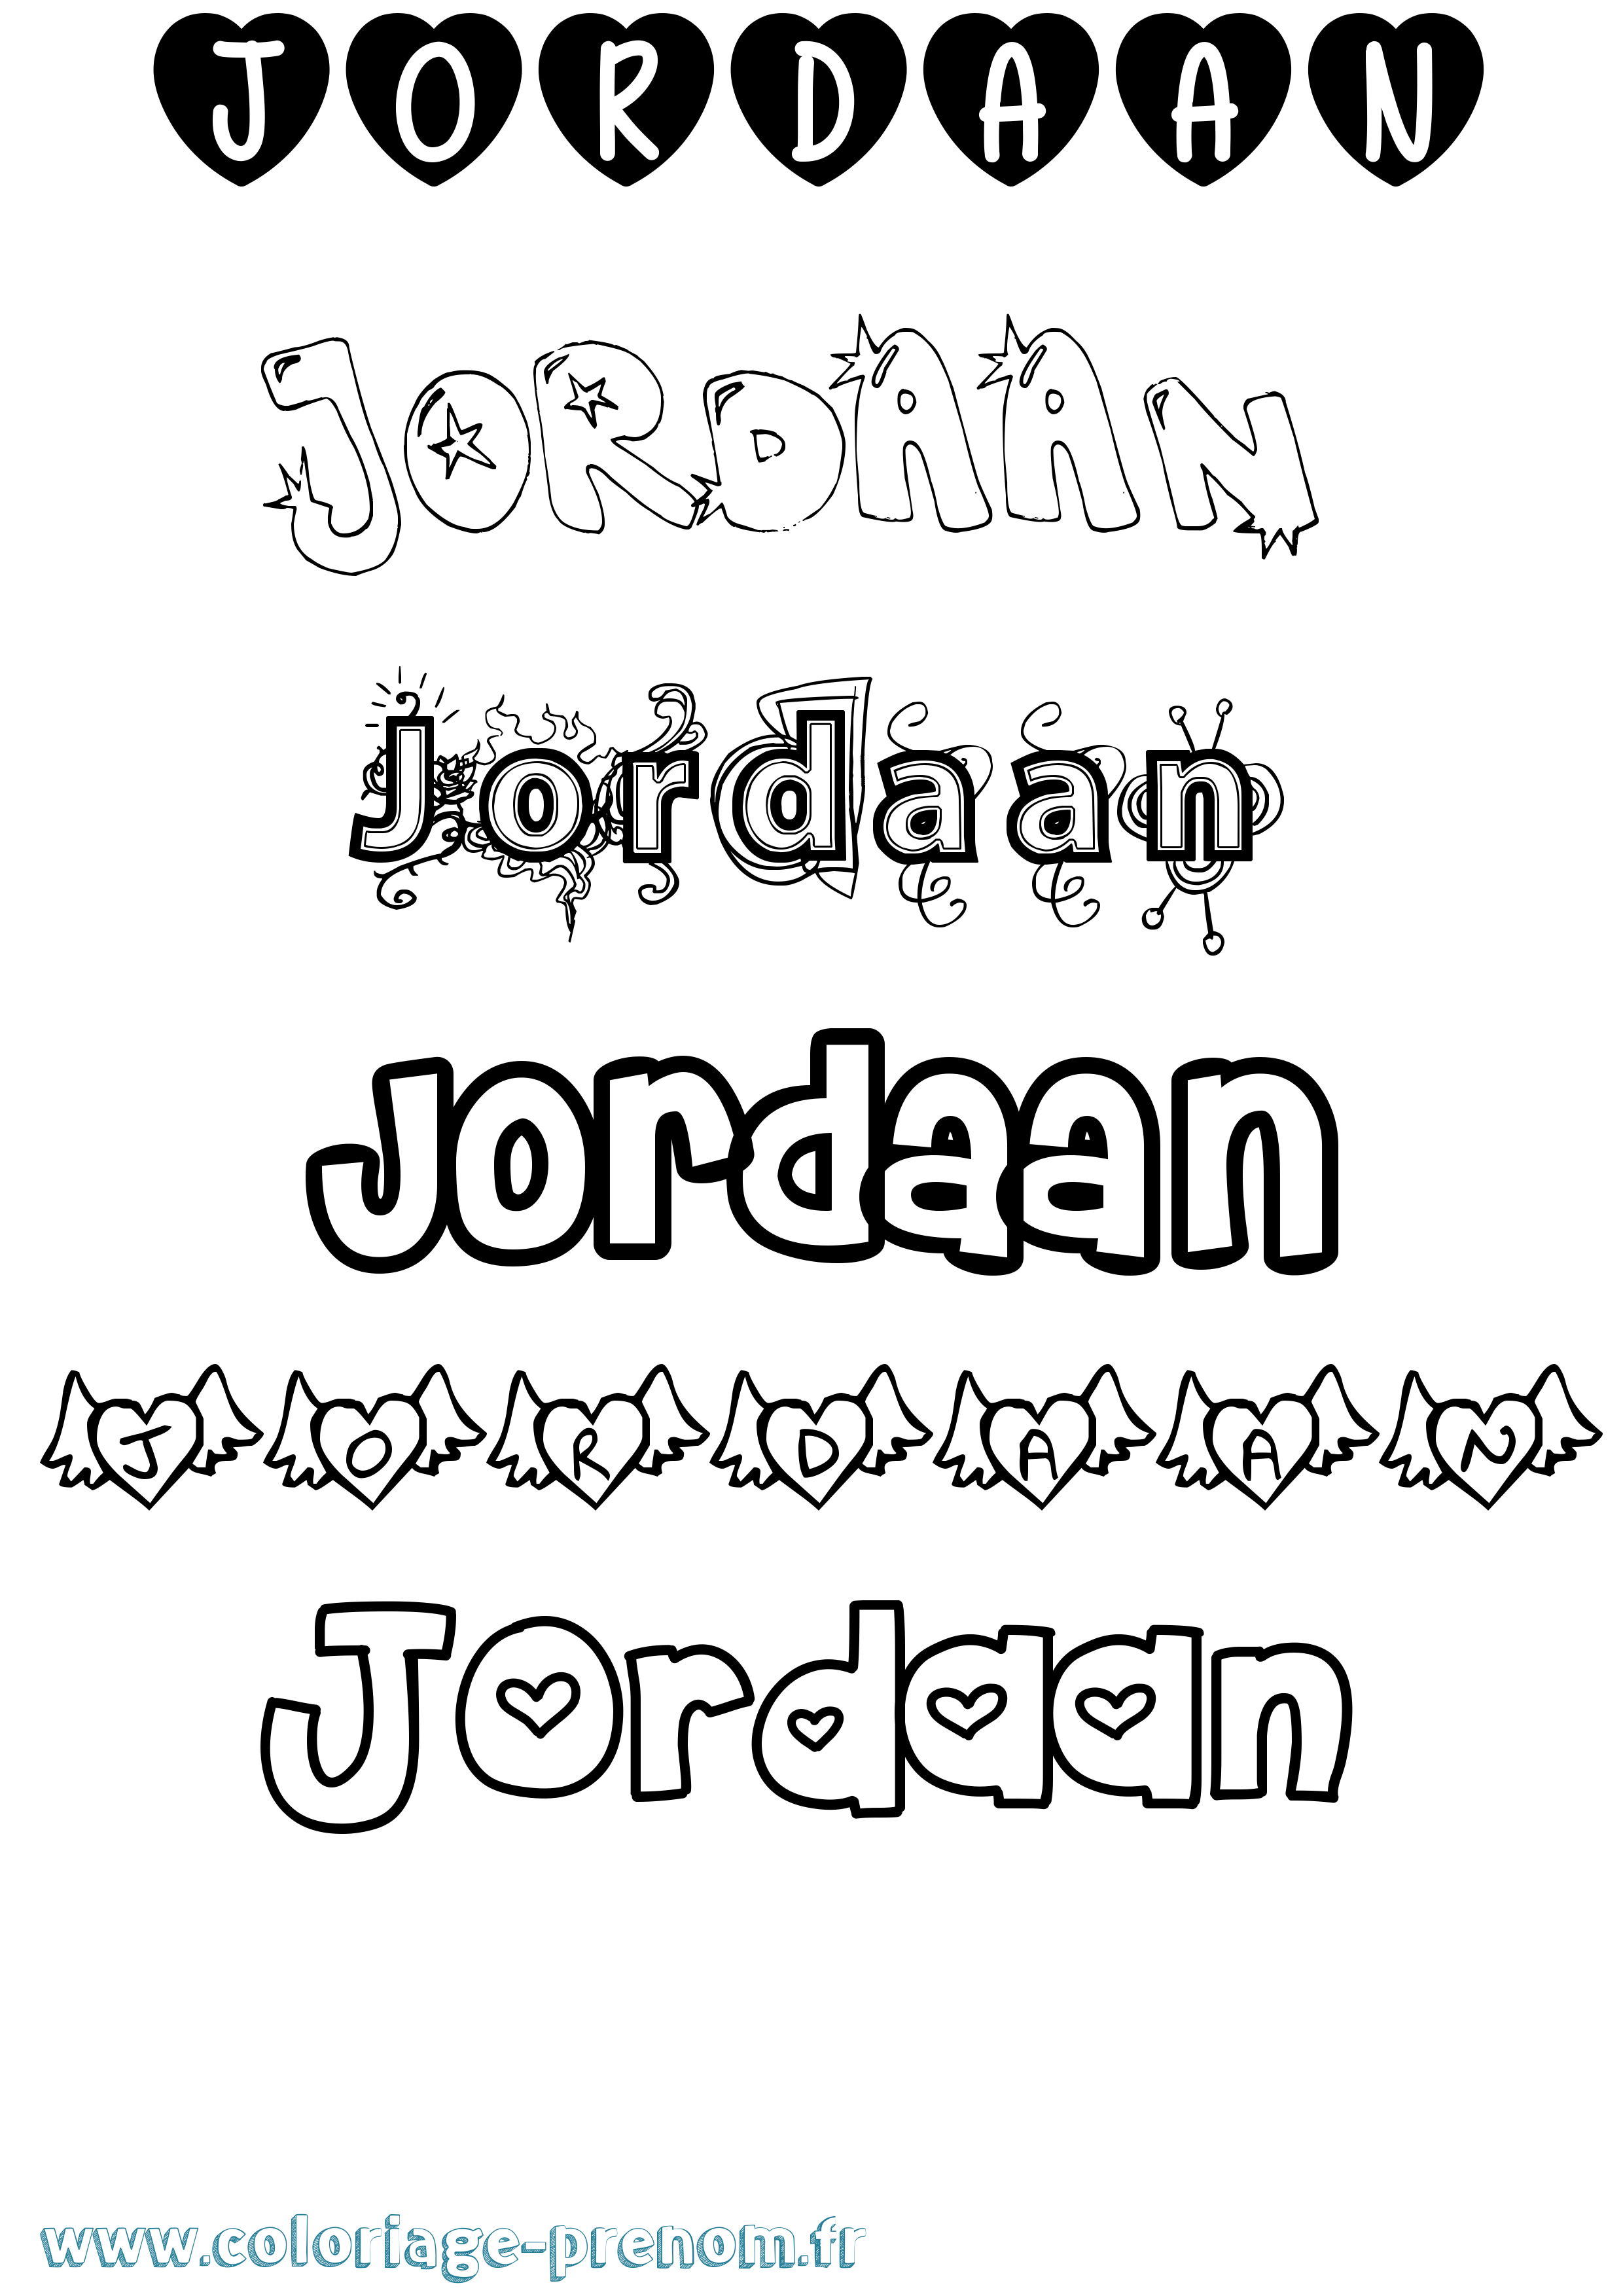 Coloriage prénom Jordaan Girly